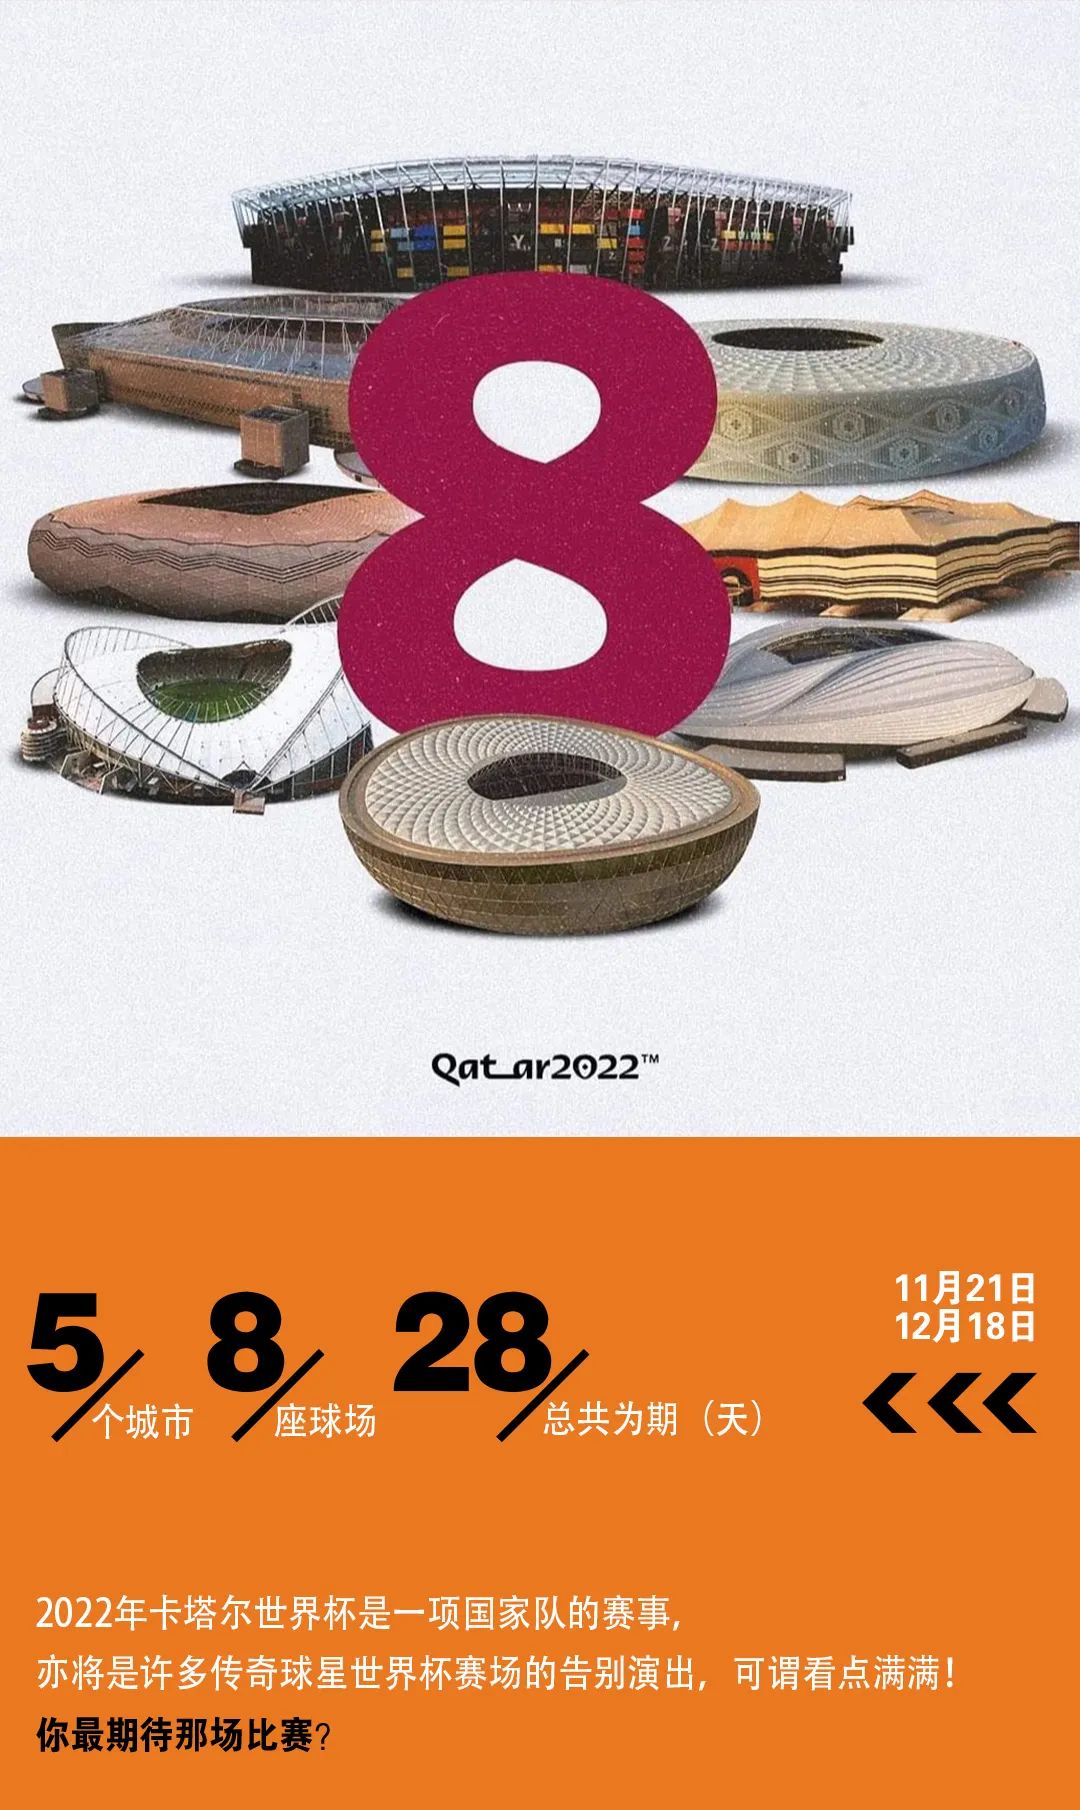 #𝐓·𝐎𝐍𝐄 𝐅𝐀𝐂𝐓𝐎𝐑𝐘#2022.11.21 电音工场 · 卡塔尔世界杯狂欢夜-平南T.ONE FACTORY电音工厂